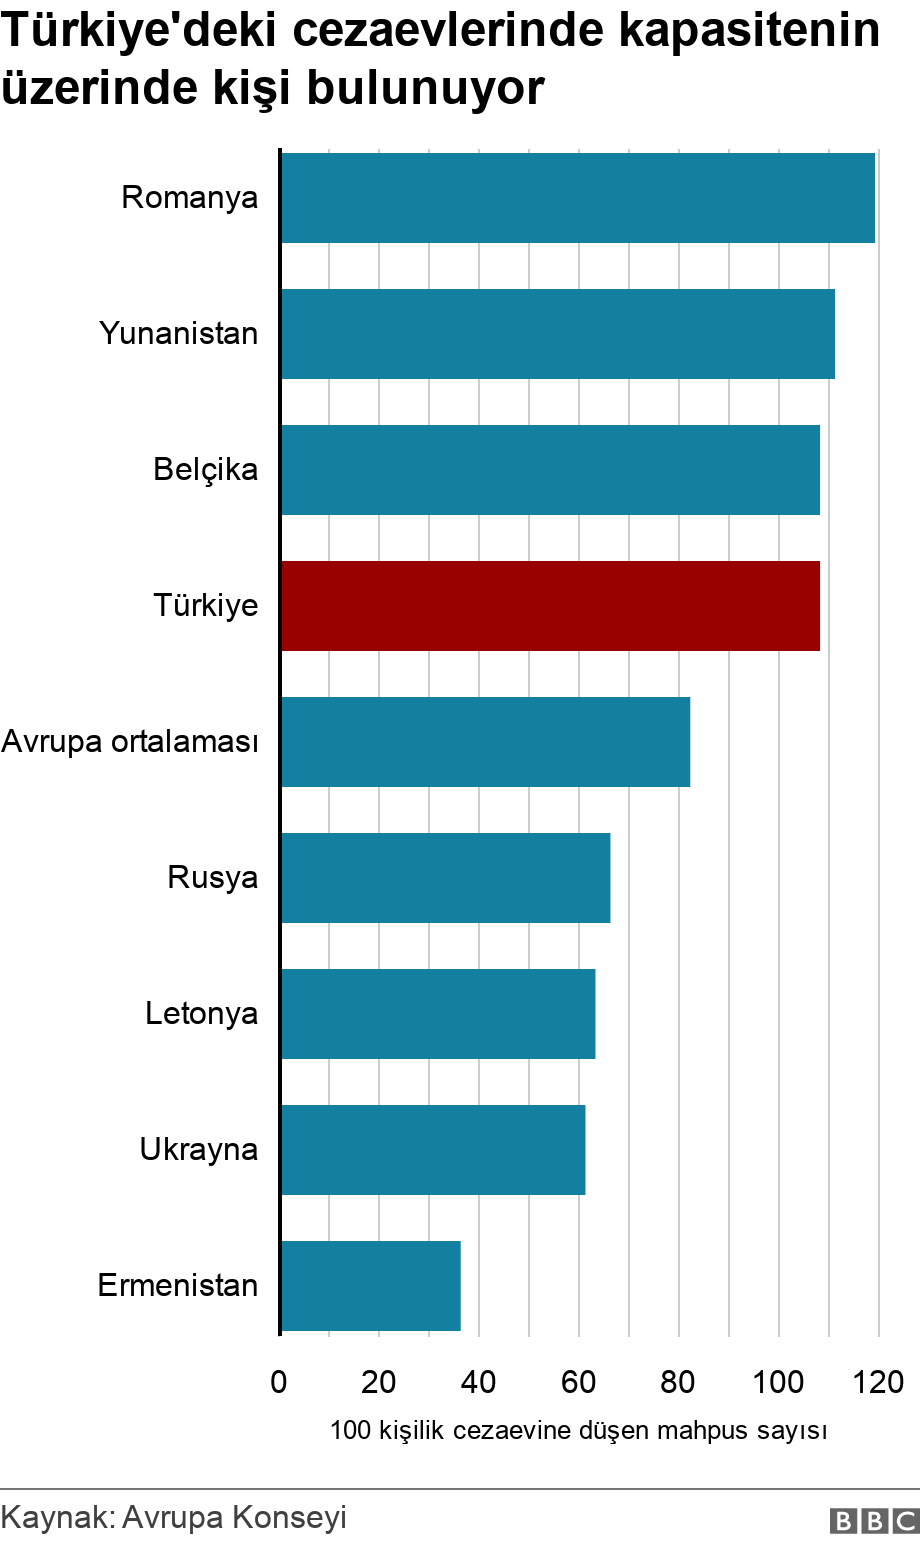 Avrupa Kurulu: Türkiye 2020'de nüfusa oranla cezaevine girişlerde birinci sırada